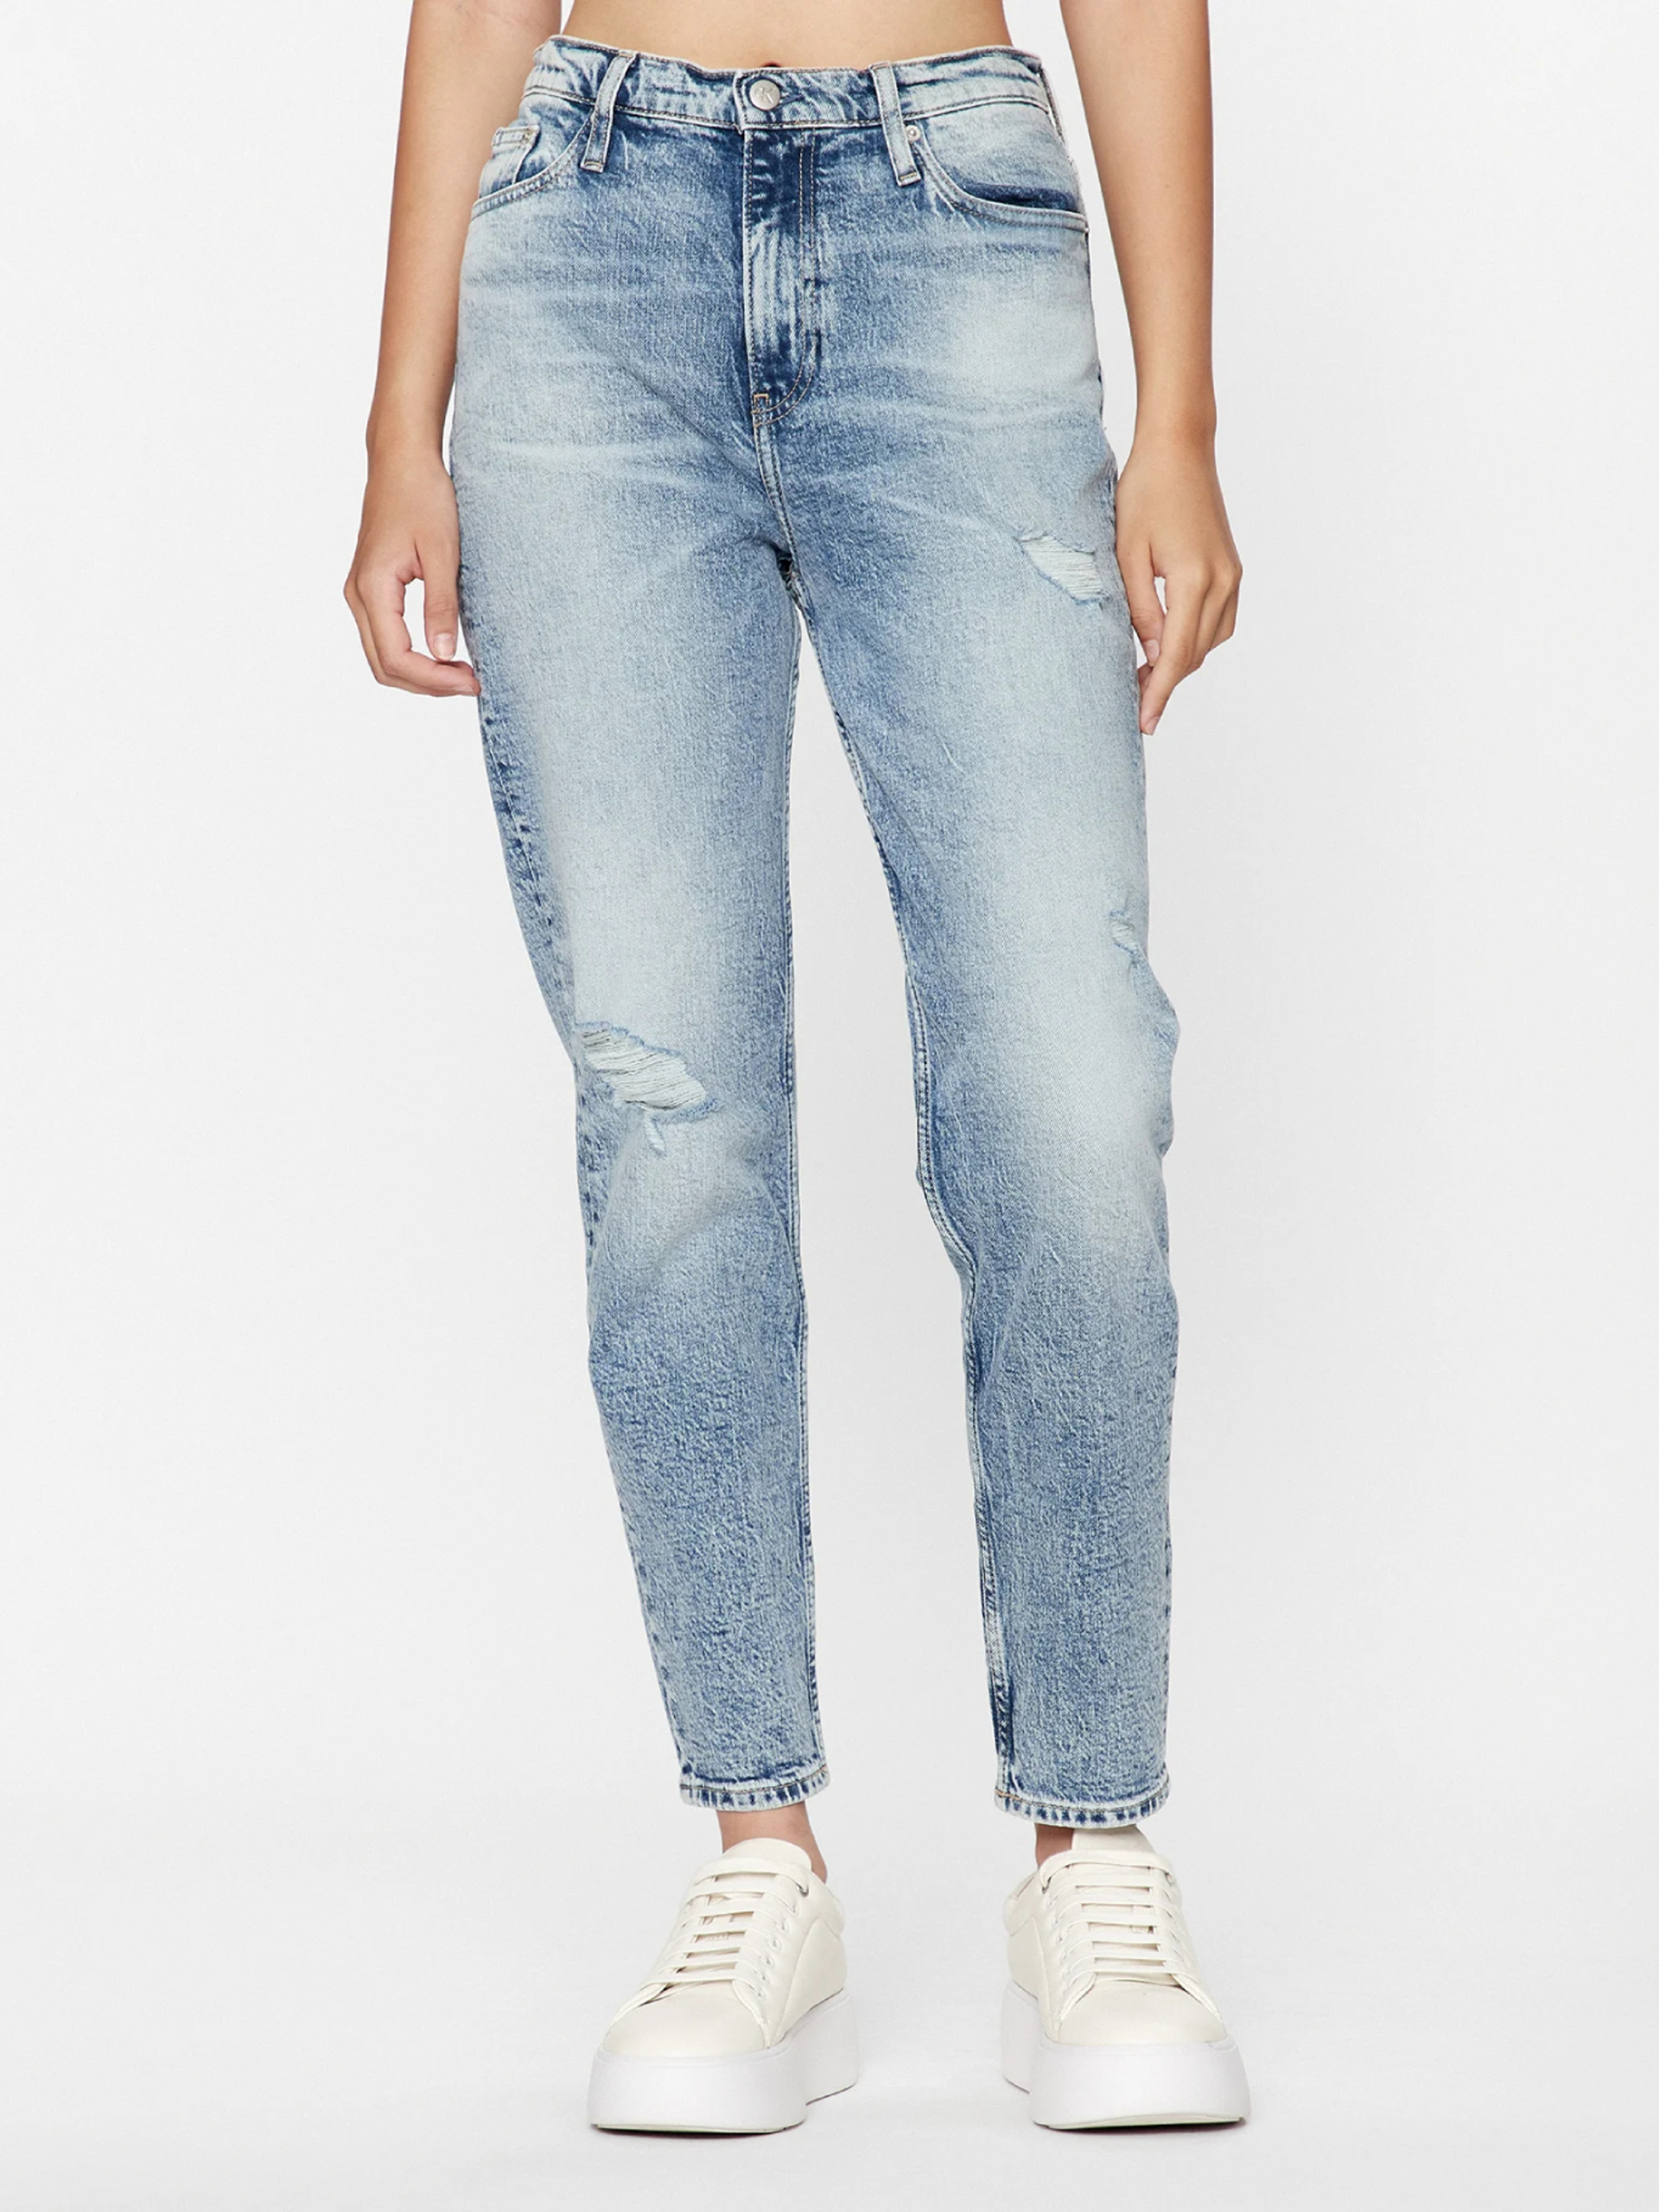 Calvin Klein dámské modré džíny  - 30/28 (1A4)